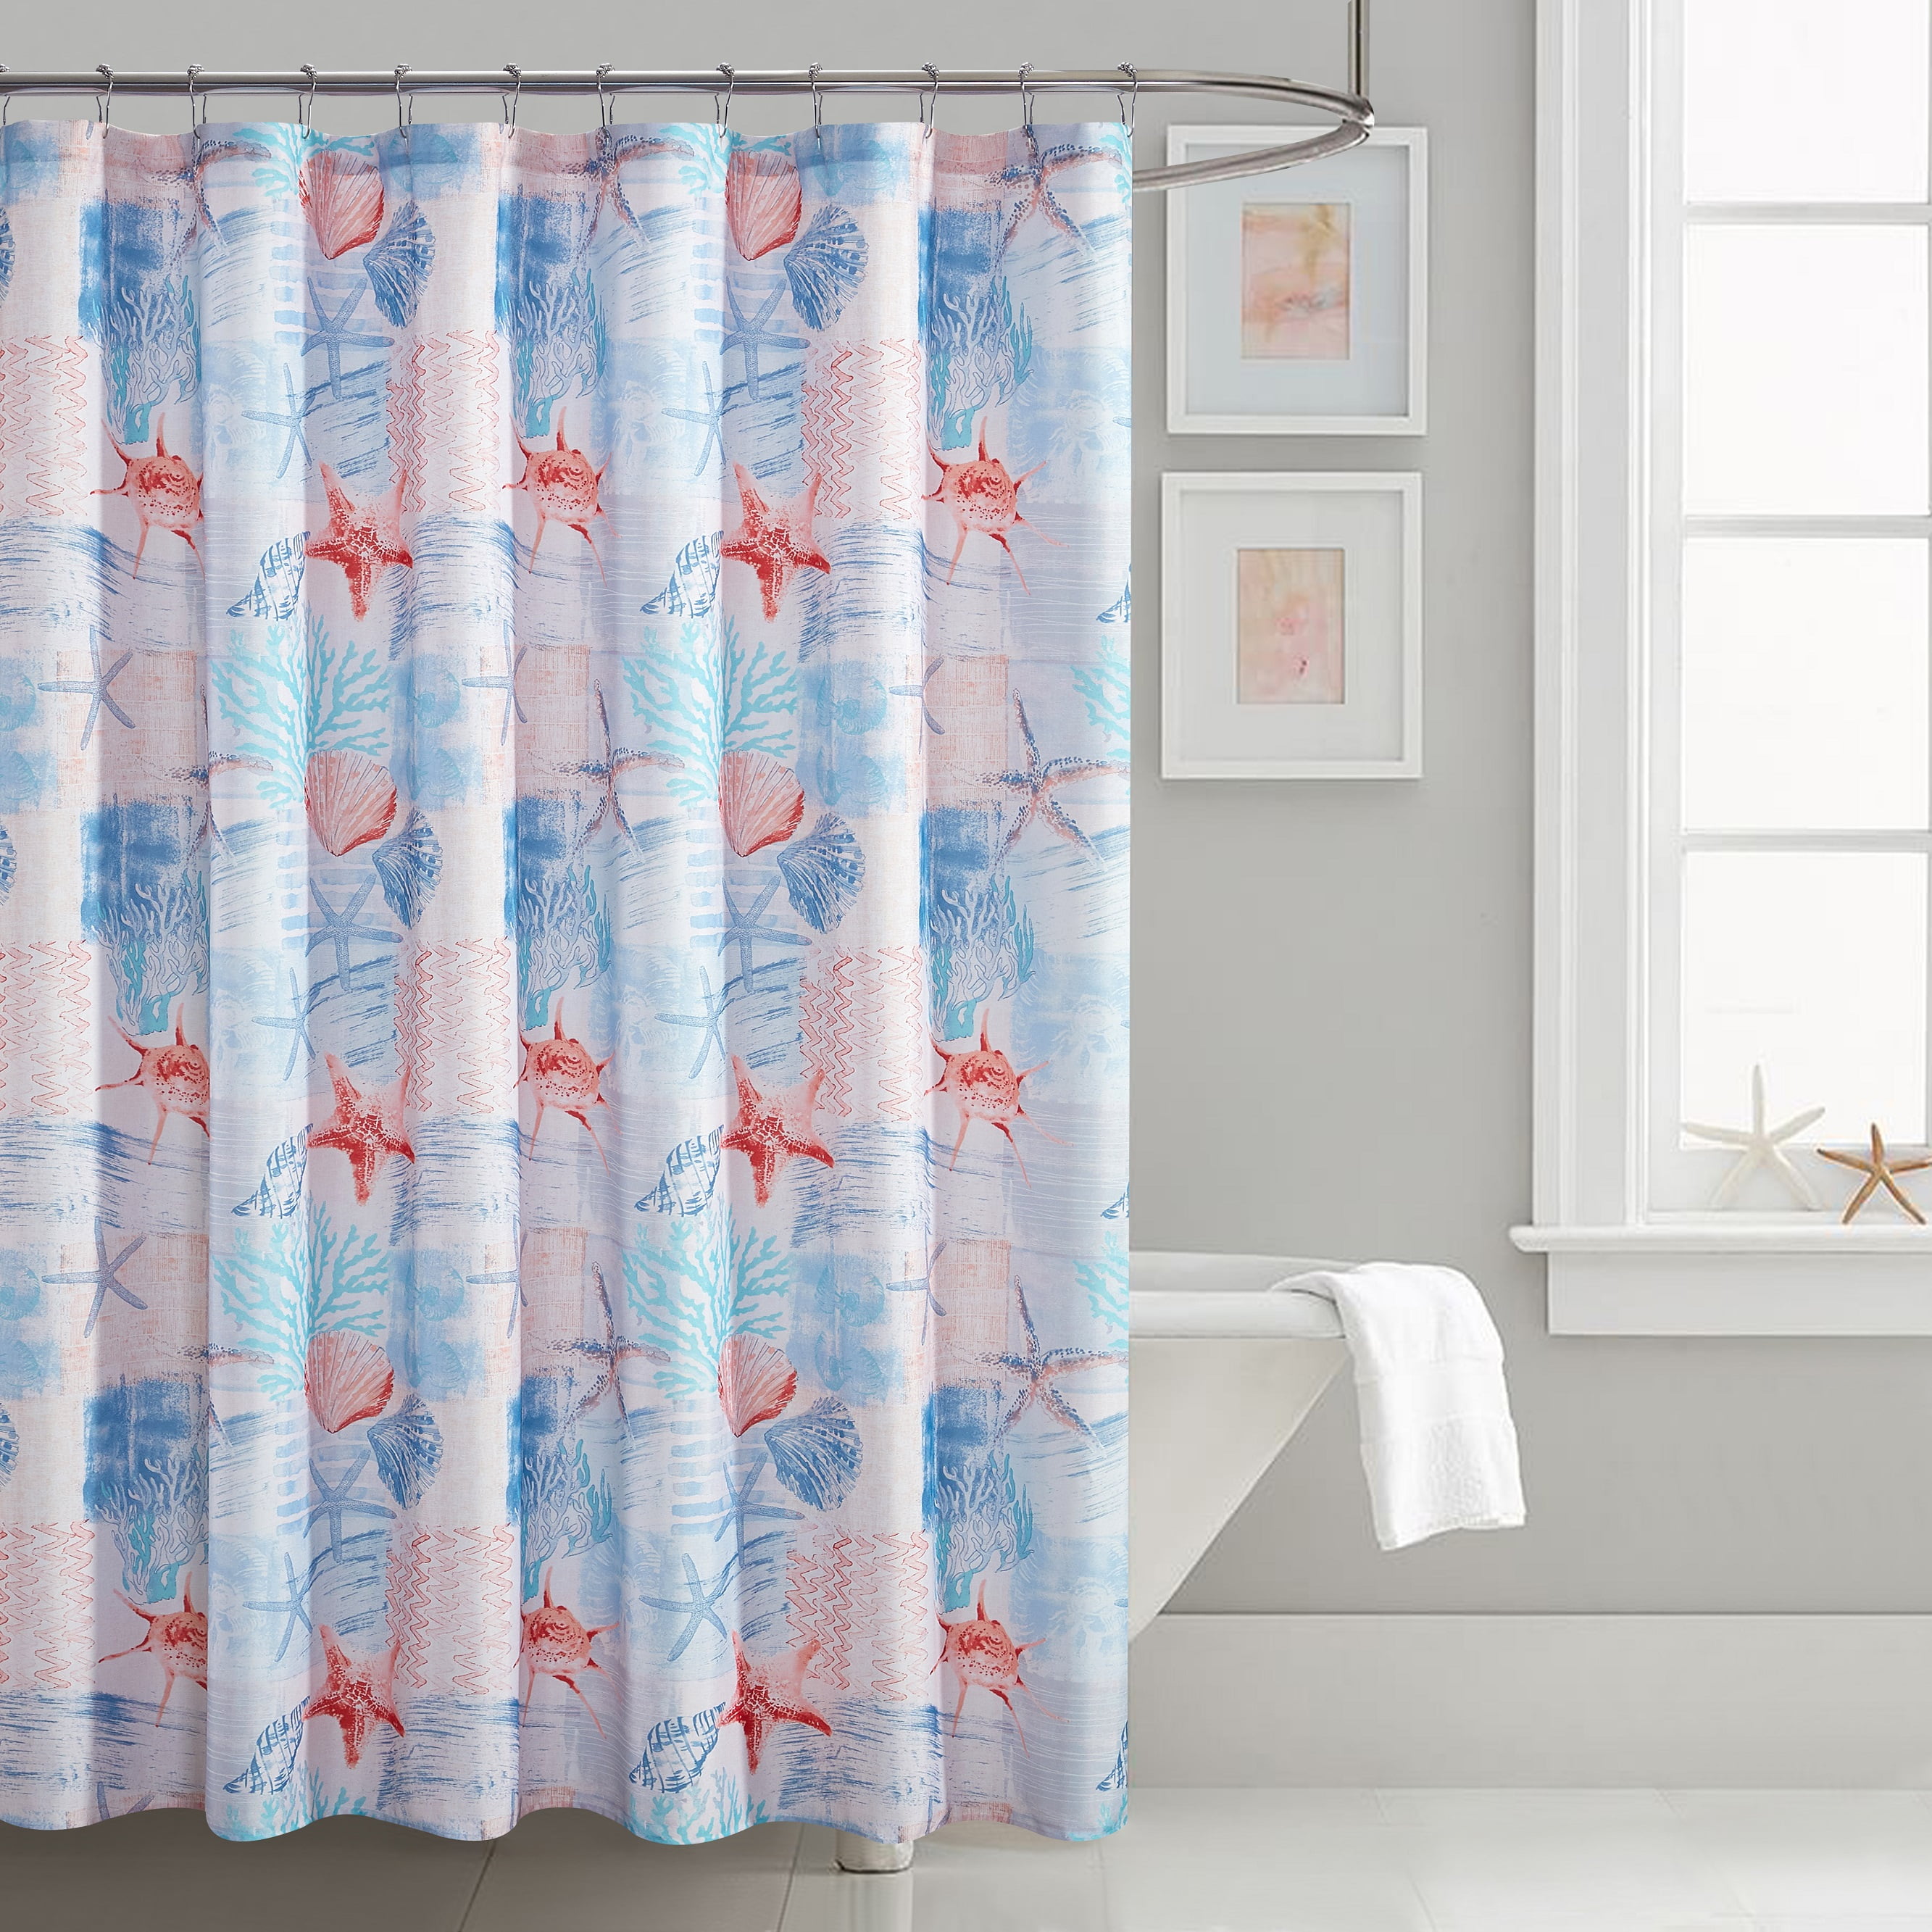 Bath Rugs Shower Curtains, Peace Love Faith Shower Curtain